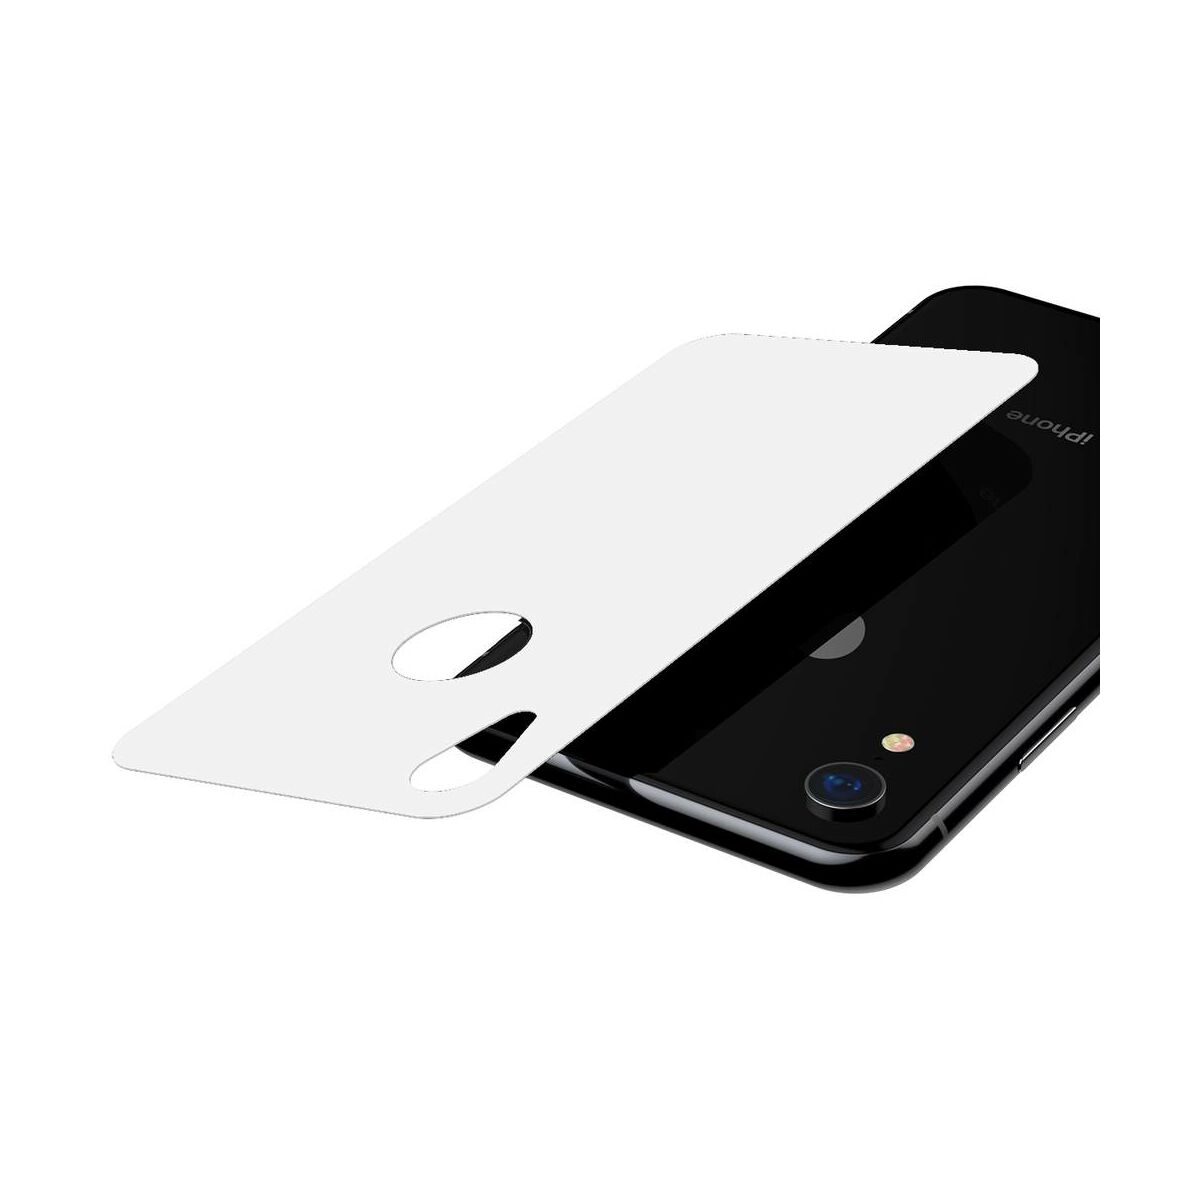 Baseus iPhone XR/ 11 (6.1") 0.3 mm, teljes felületre edzett üveg hátlap védő fólia, fehér (SGAPIPH61-BM02)